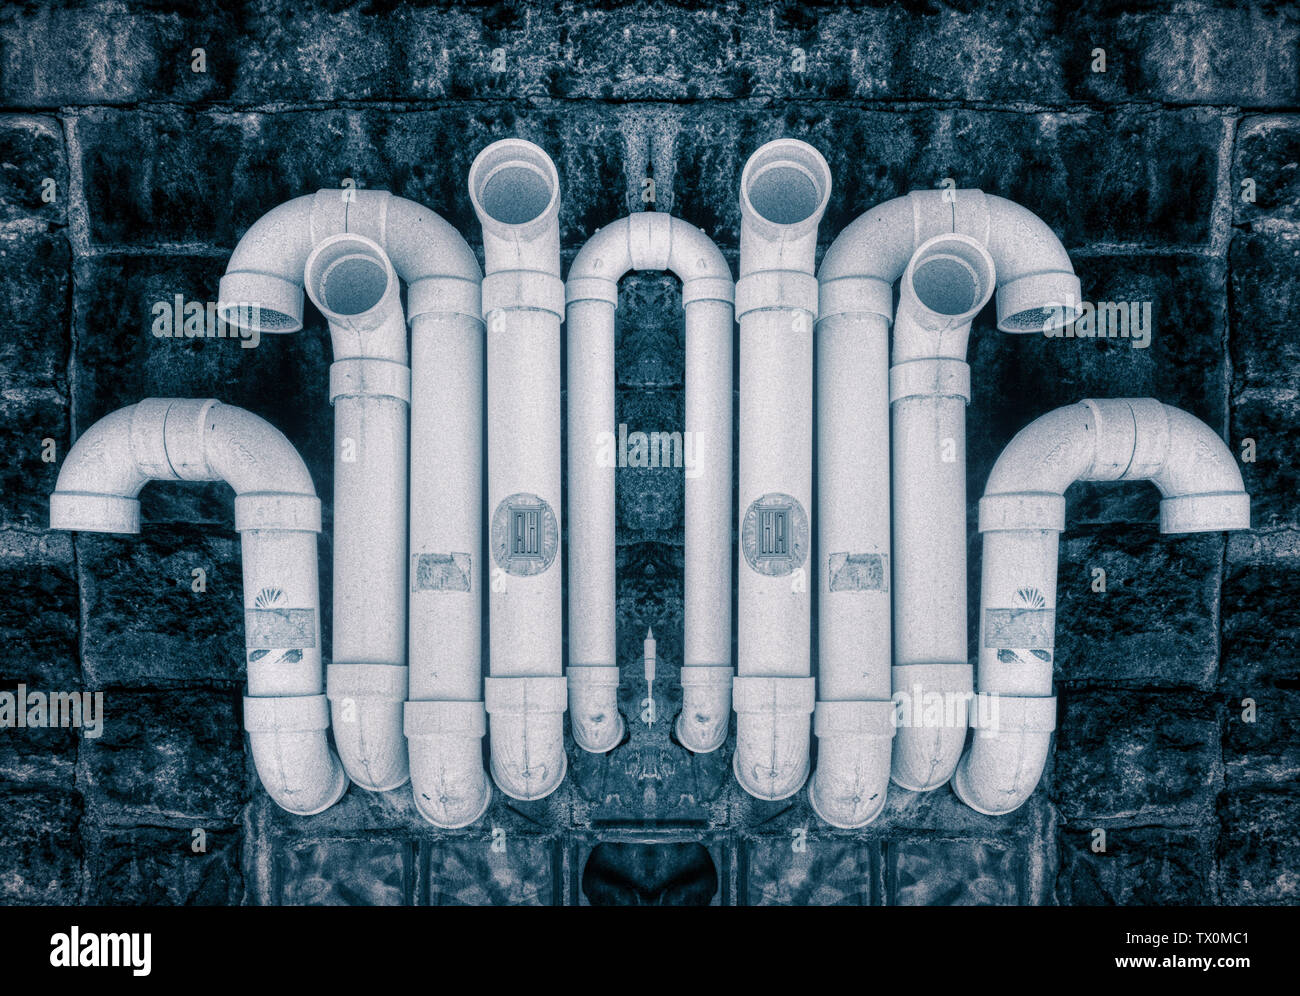 Un tableau abstrait avec beaucoup de tuyaux en PVC blanc dans un design tout en courbes Banque D'Images